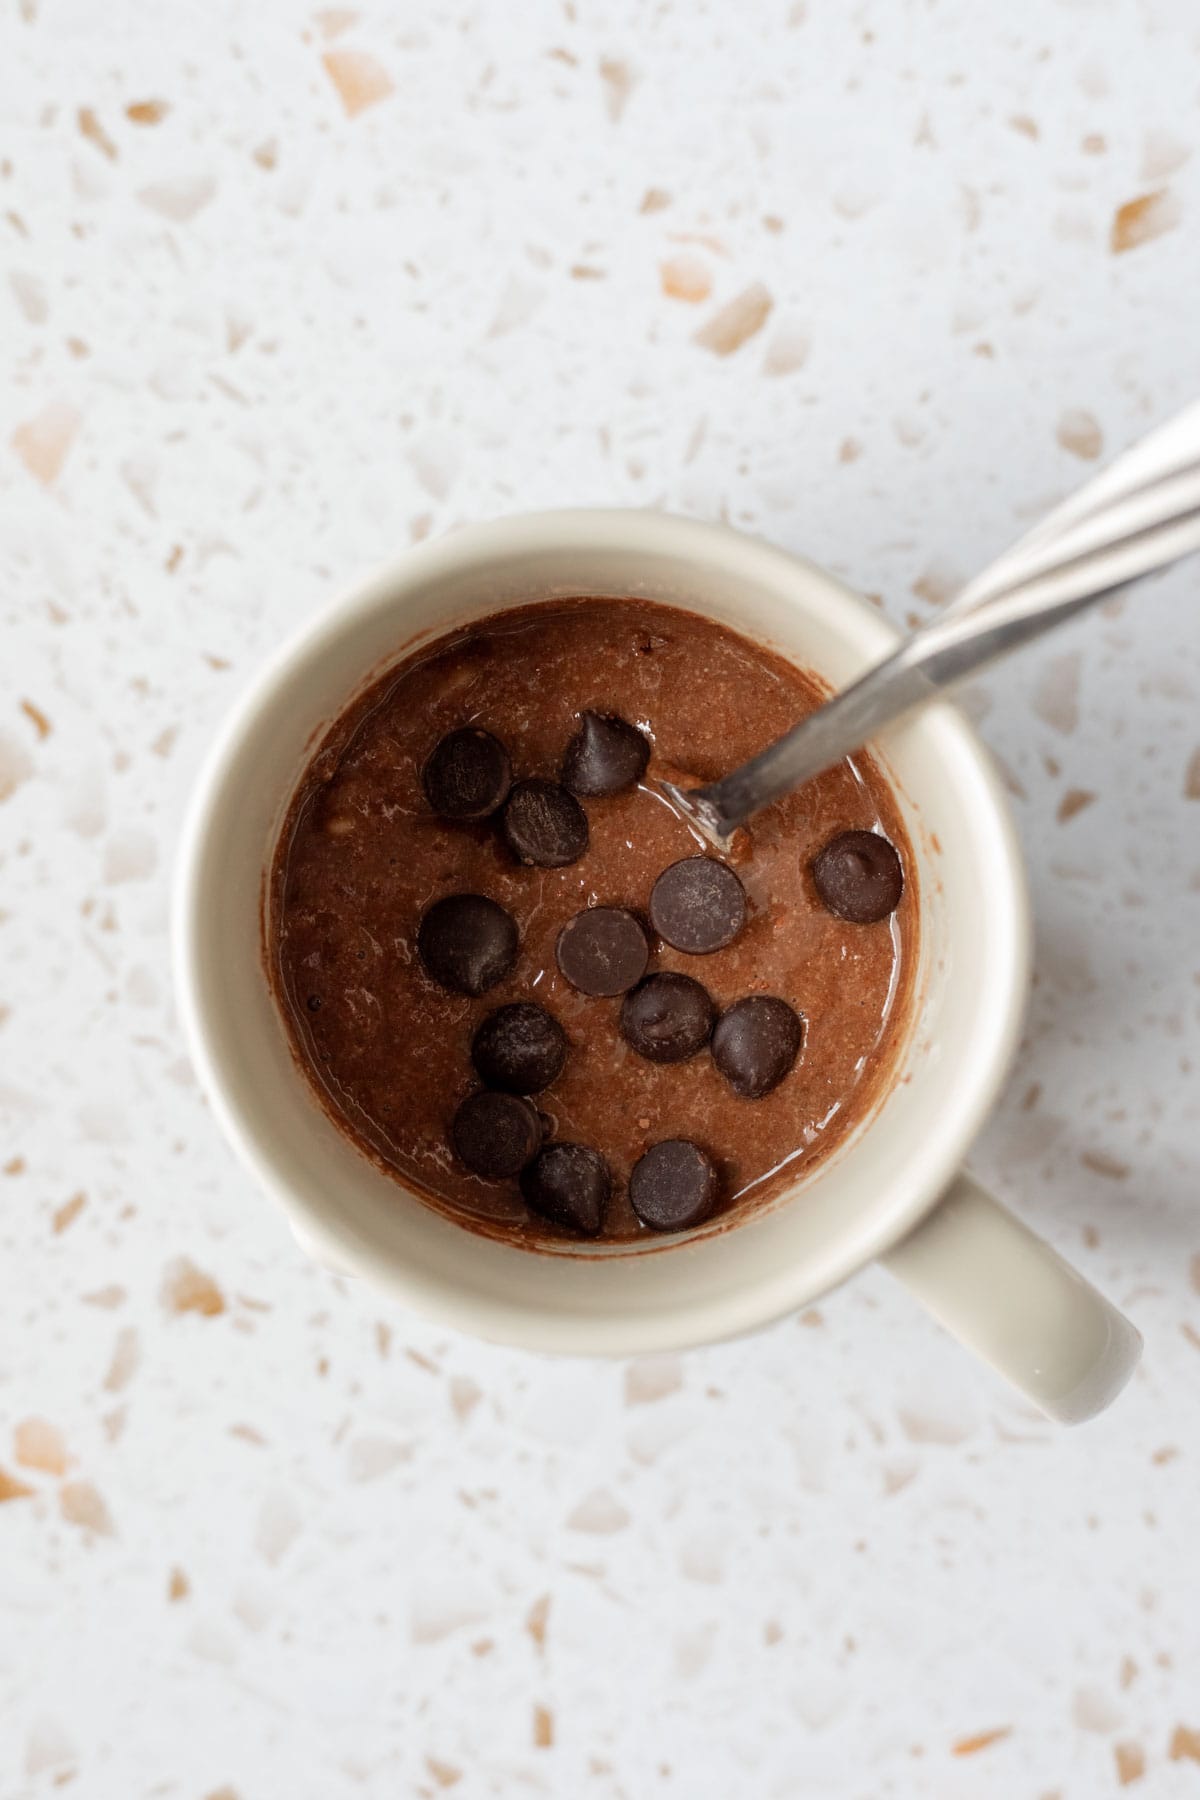 Brownie batter stirred together in a mug.